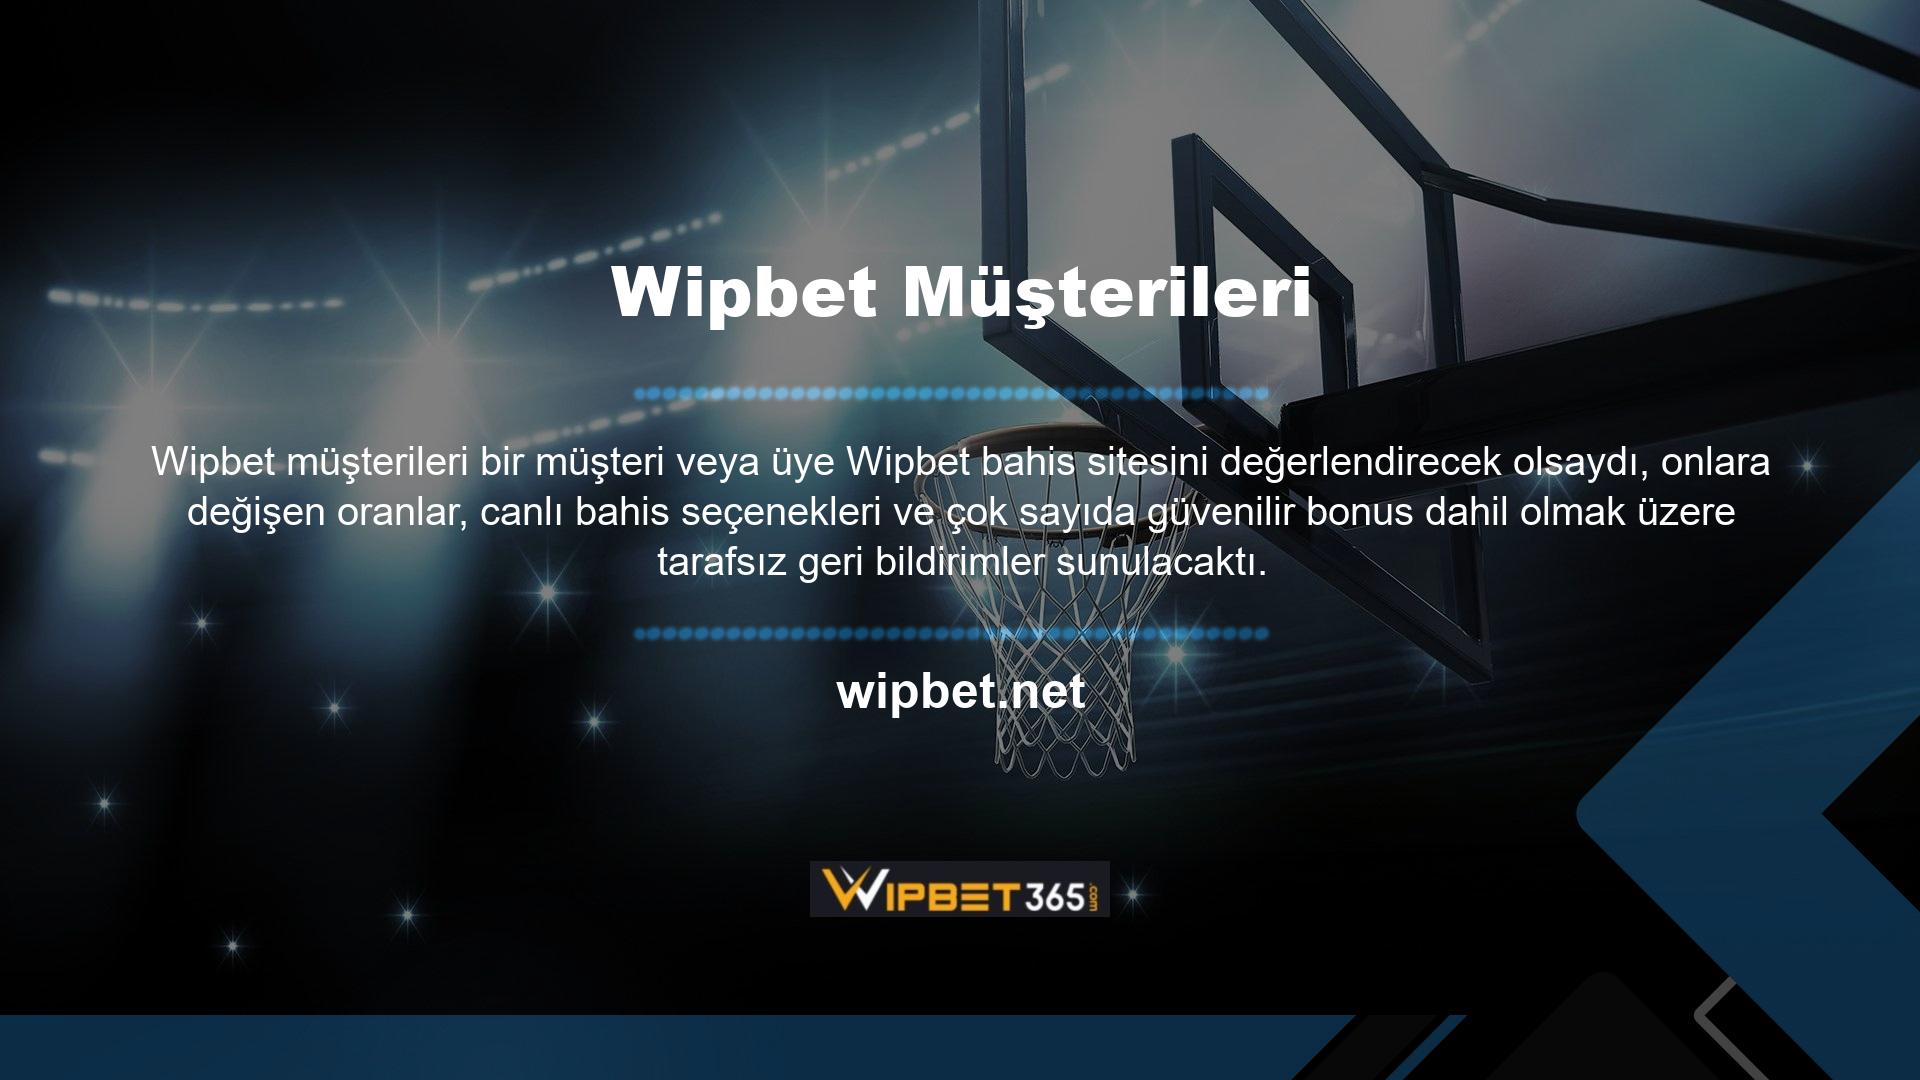 Wipbet Giriş sayfasına ulaşmak için oyun oynamak veya üye olmak isteyen kullanıcılar canlı destek telefon numarasını kullanabilirler